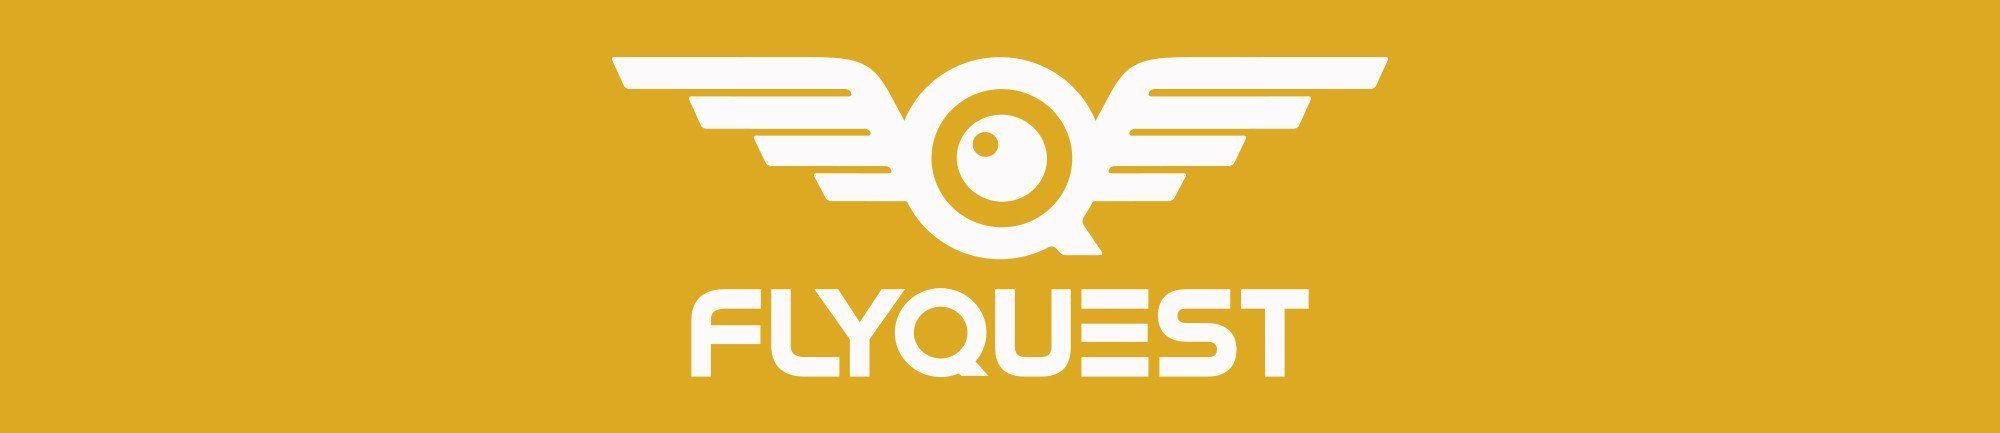 Flyquest Logo - FlyQuest (LoL) – MetaThreads